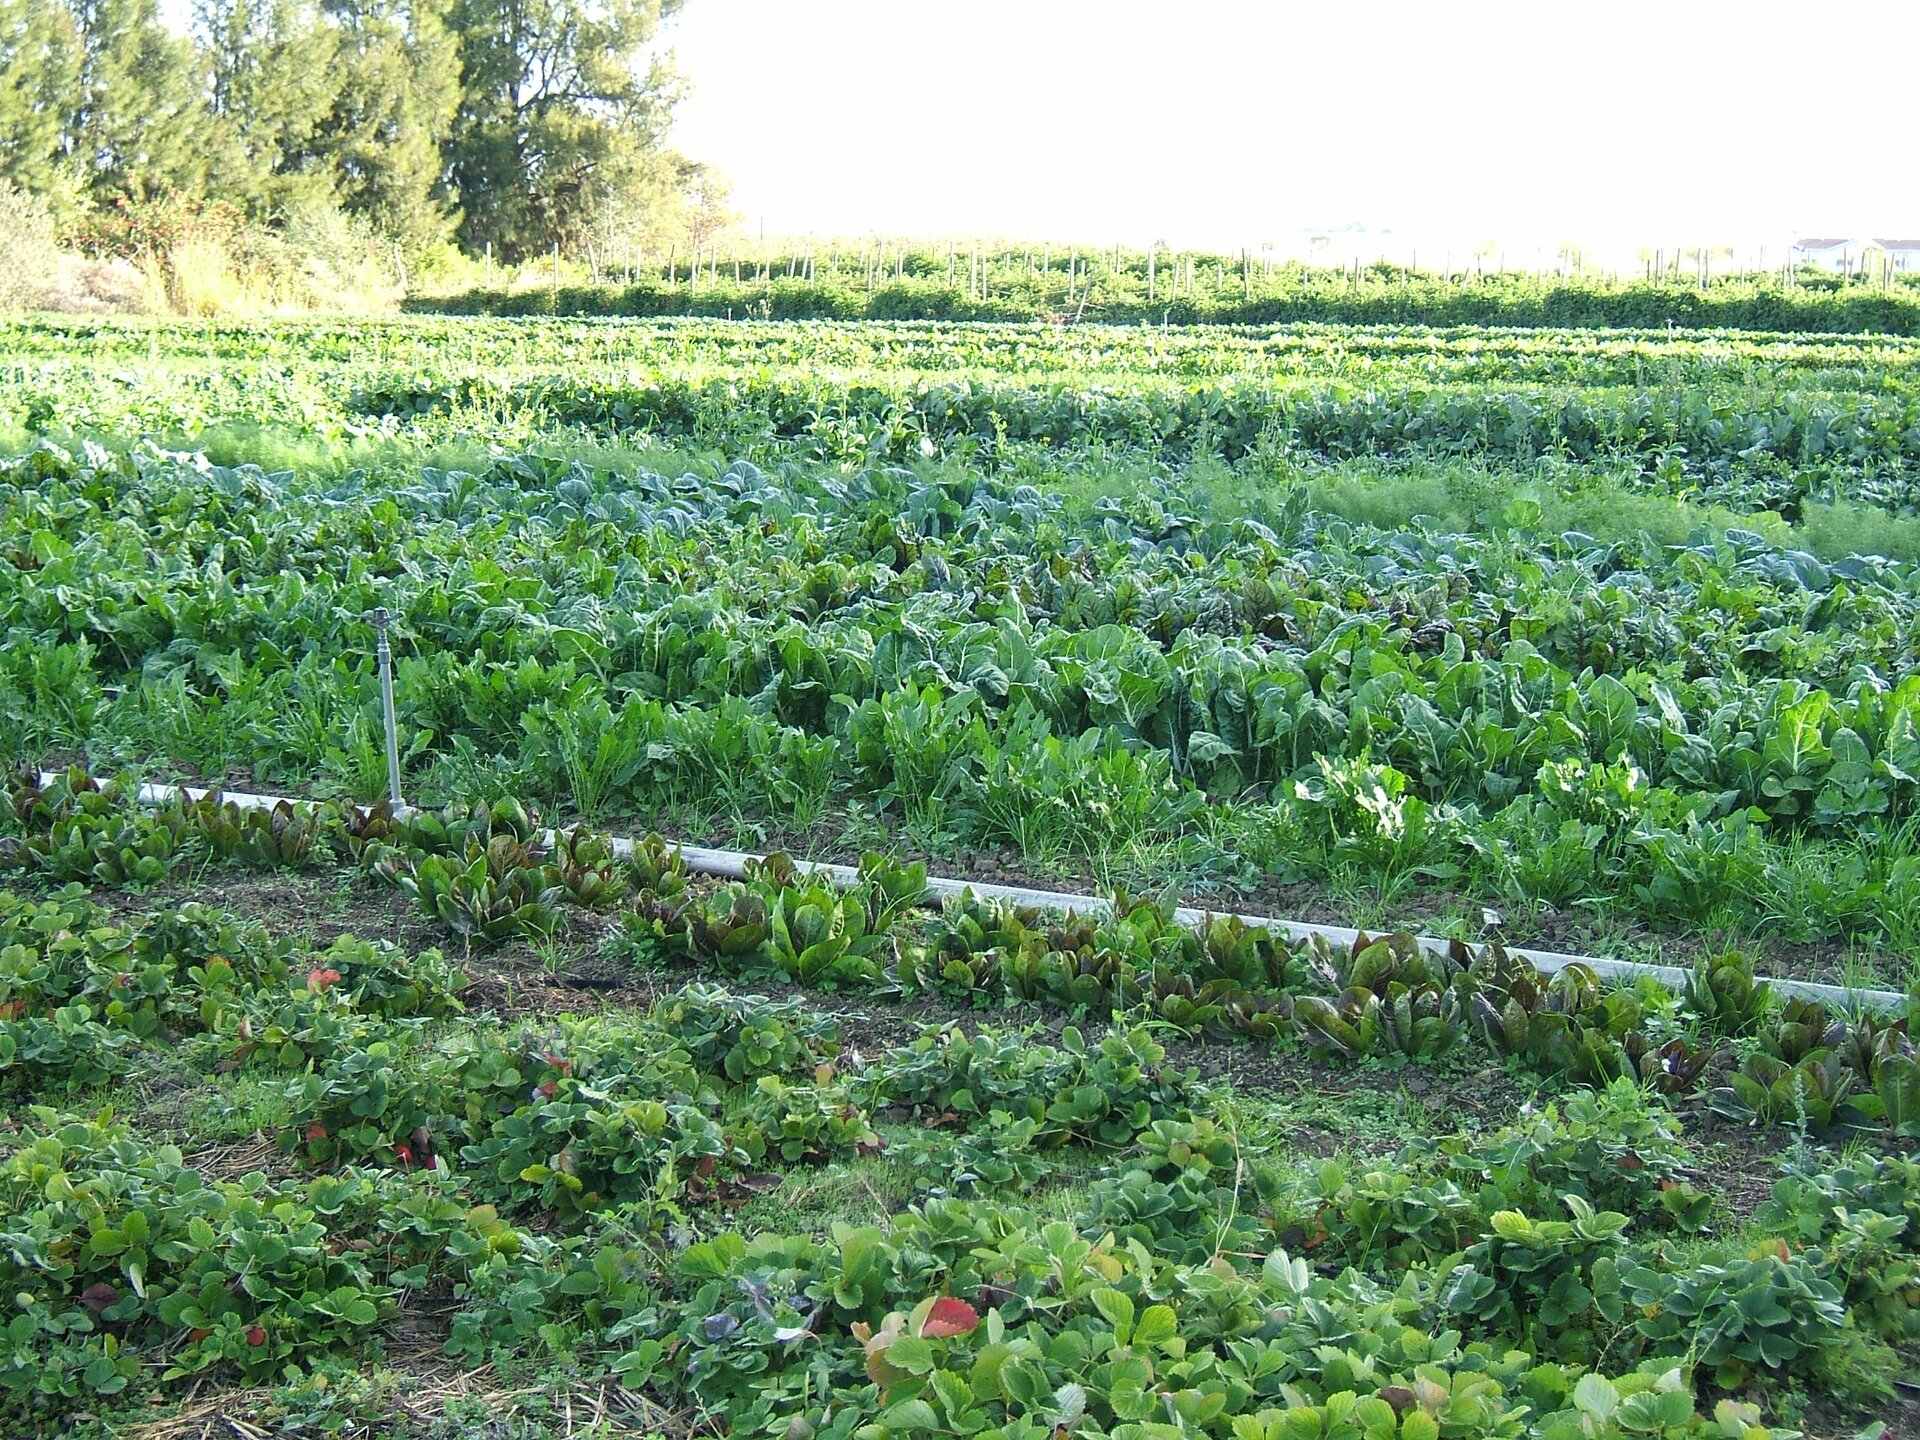  Zdjęcie przedstawia uprawę roślin posadzone w rządkach na polu. Pomiędzy rzędy równolegle do nich jest puszczony przewód, wystają z niego pionowe kraniki służące do nawadniania. 